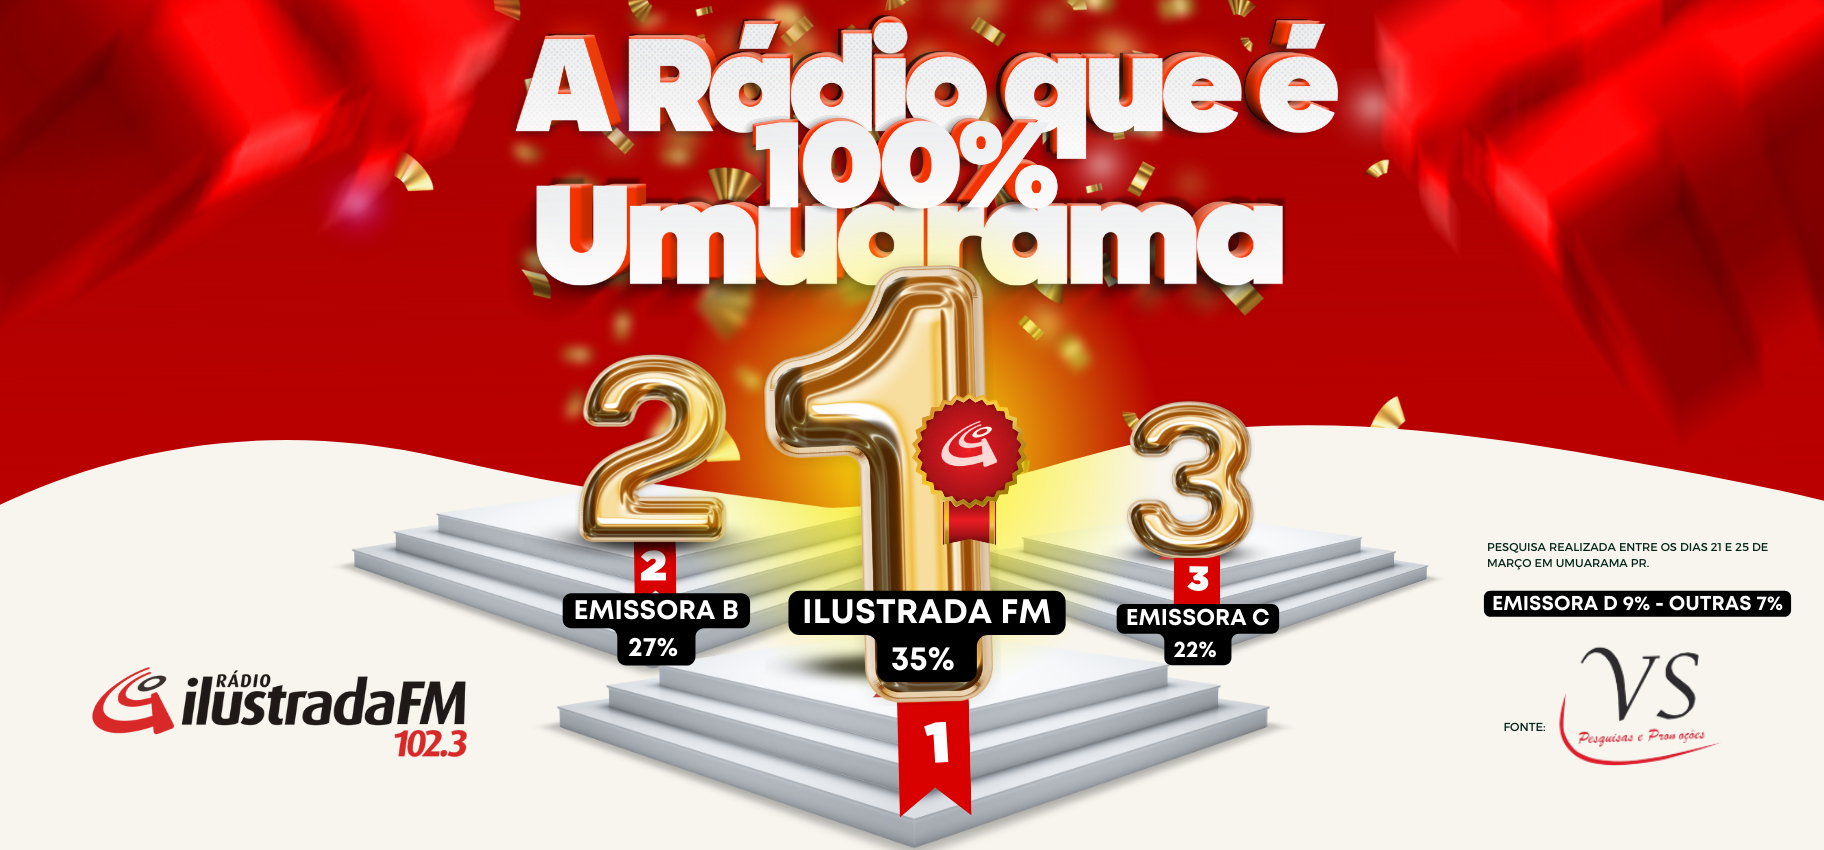 Rádio Ilustrada FM 100% Umuarama Líder em Audiência